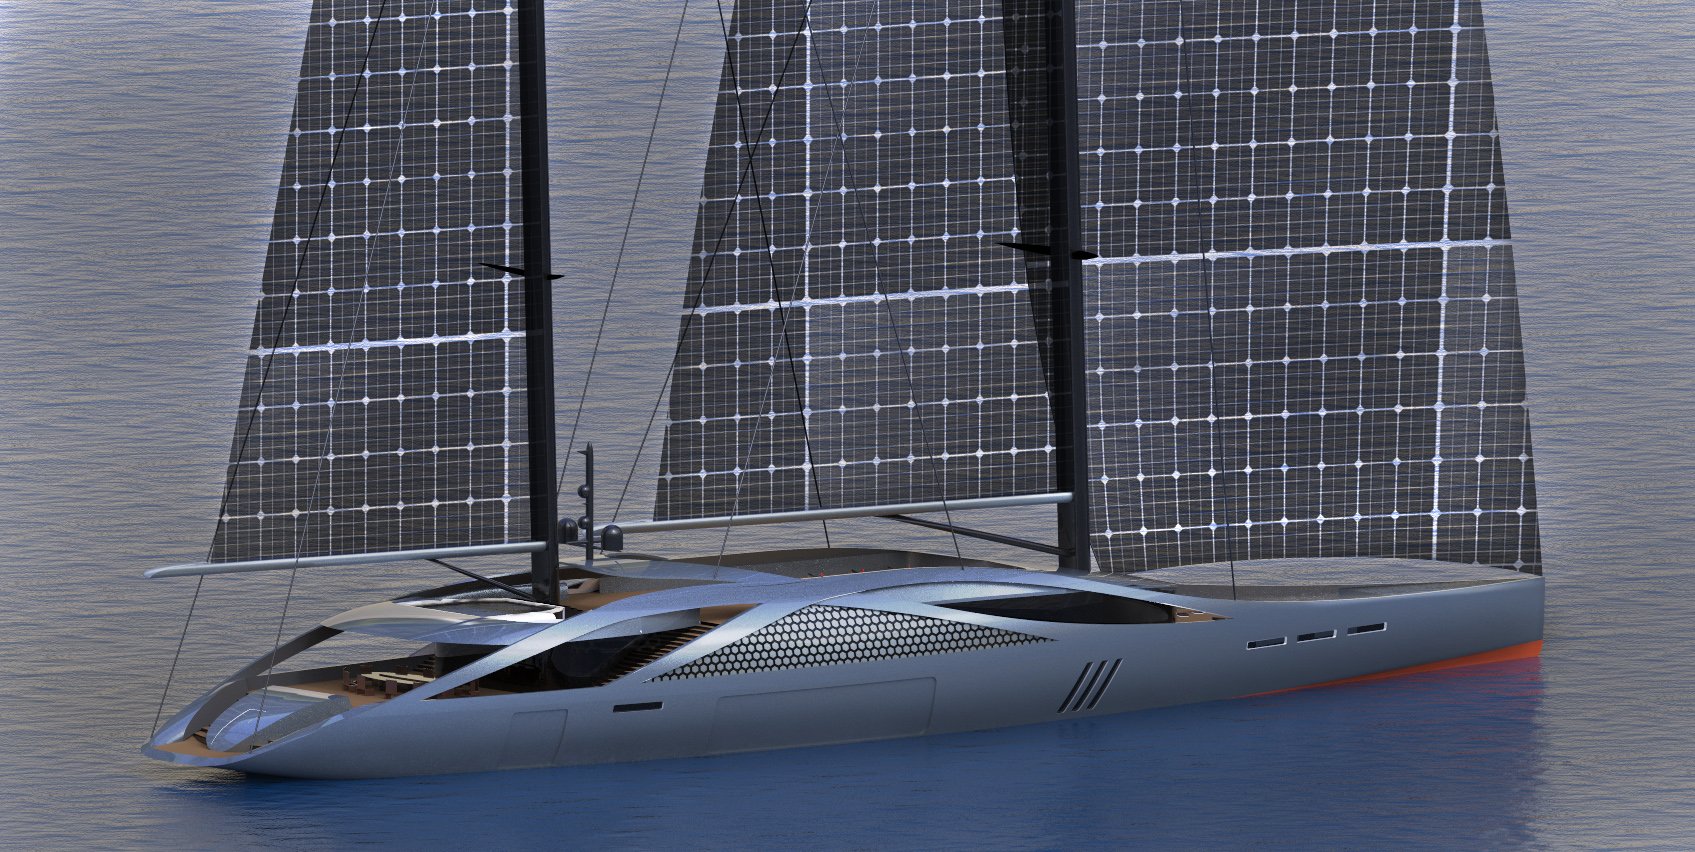 Solar sailing. Яхты Аквила. Solar — 106-метровой парусной яхты. Яхта 78 Aquila. Паруса с солнечными батареями.